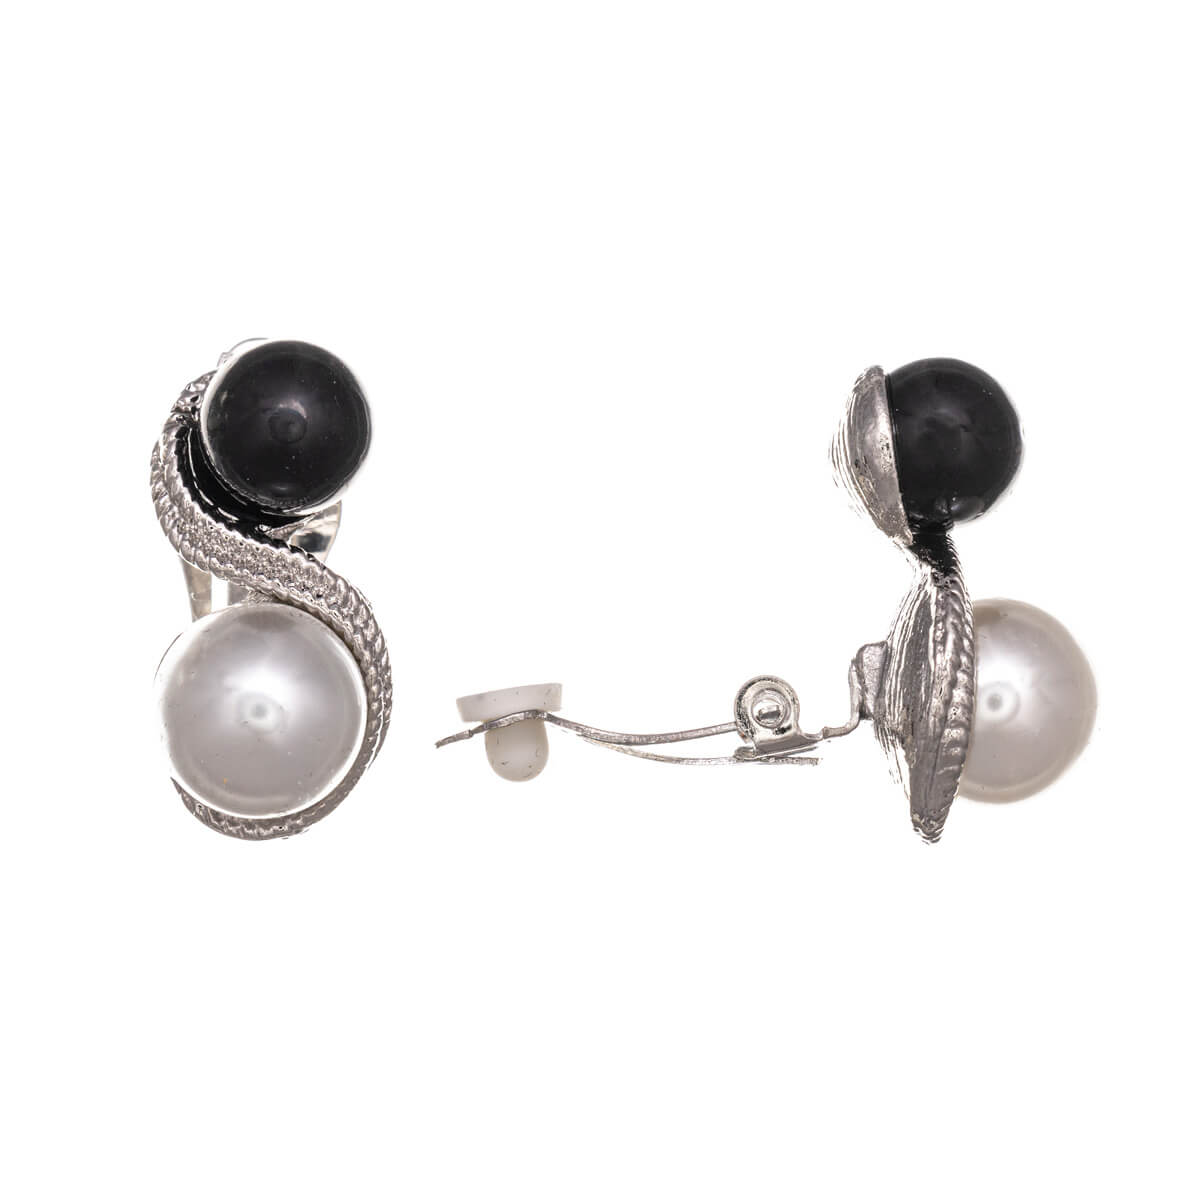 Double pearl clip earrings